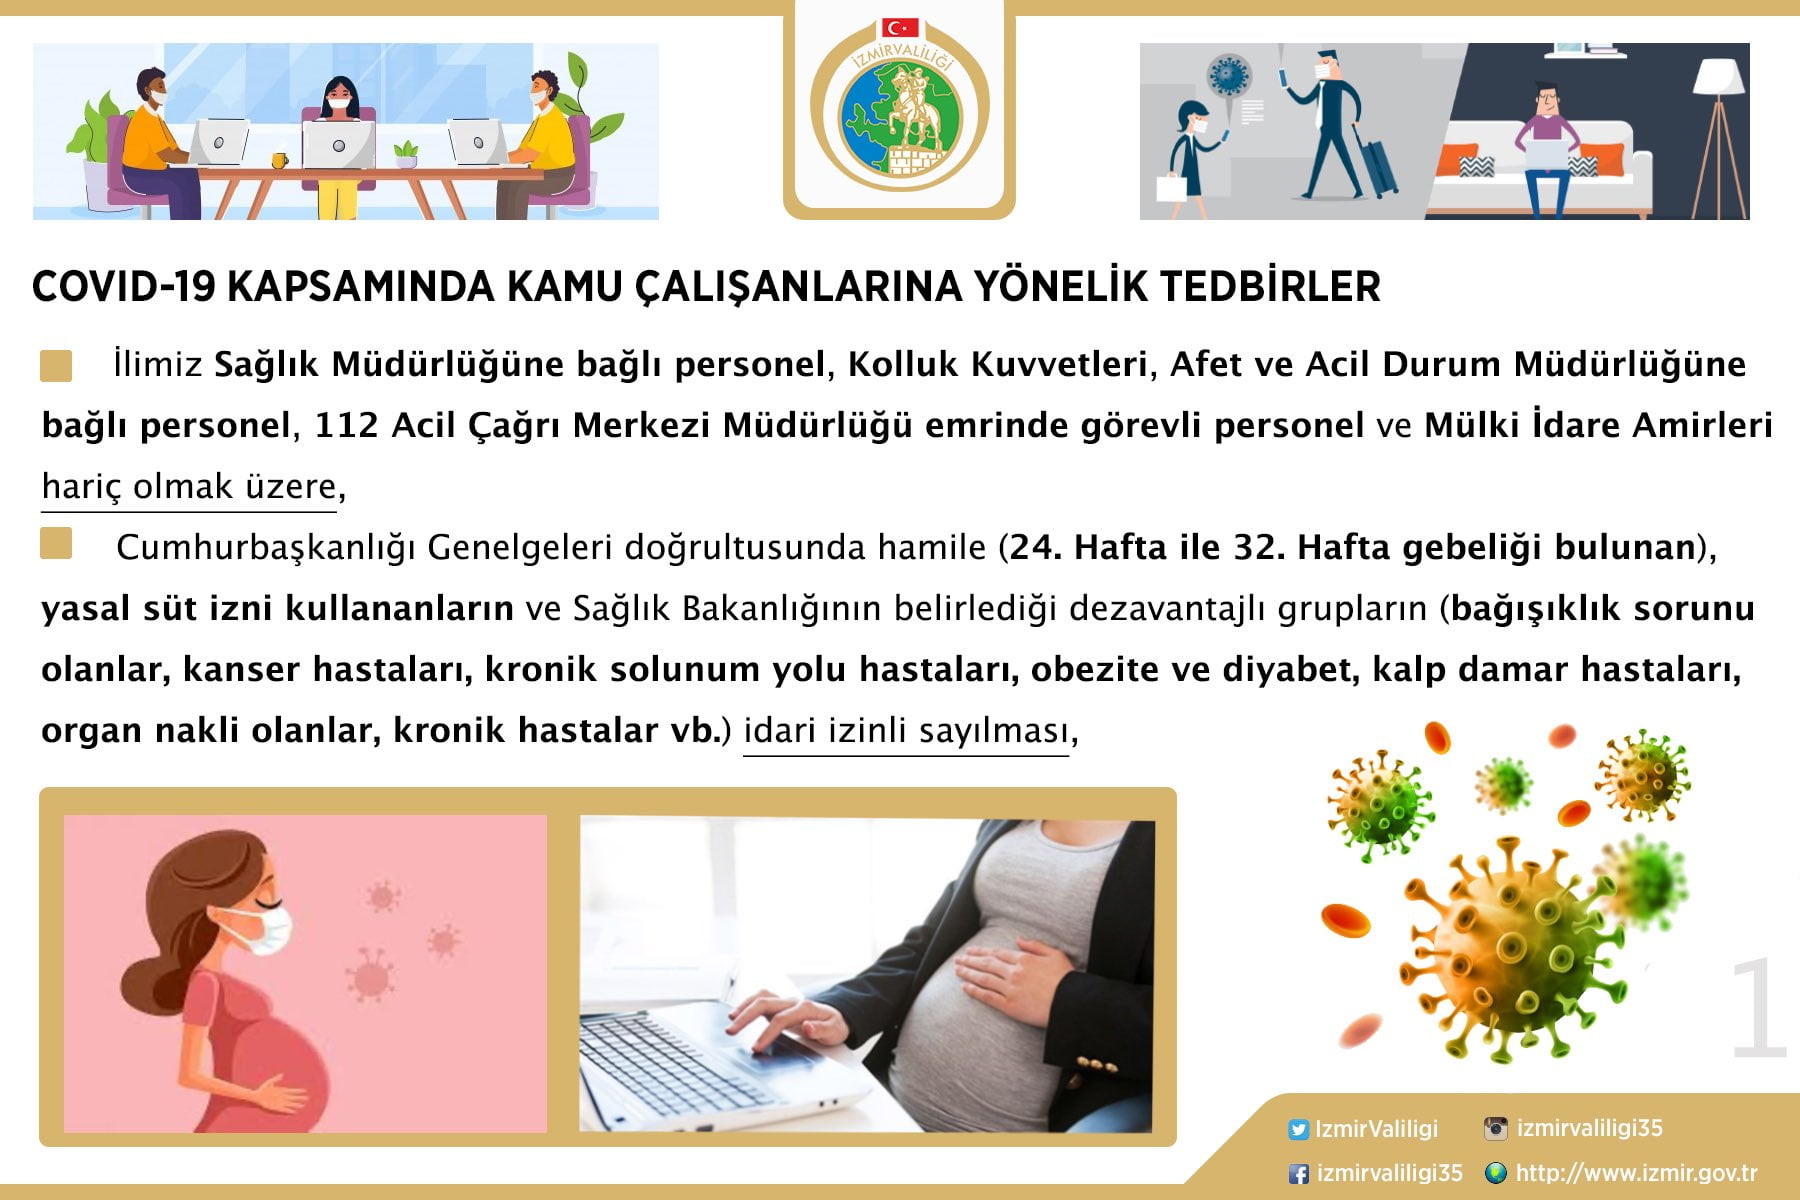 İzmir 14 Eylül'den itibaren esnek çalışma modeline geçecek